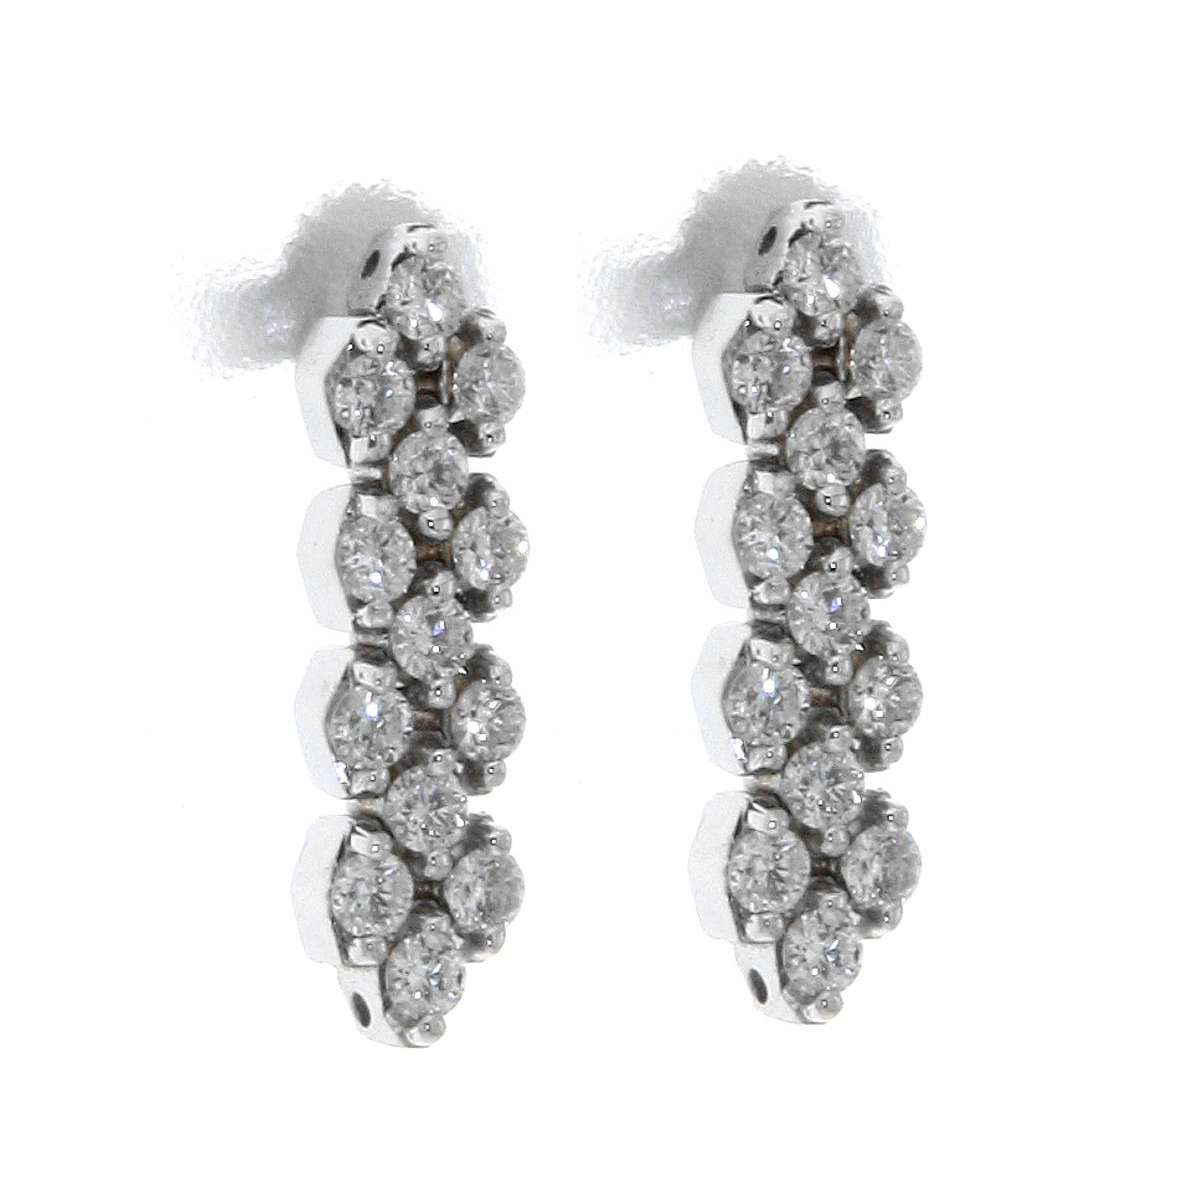 Dangling earrings 0.60 carats diamonds G-VS1